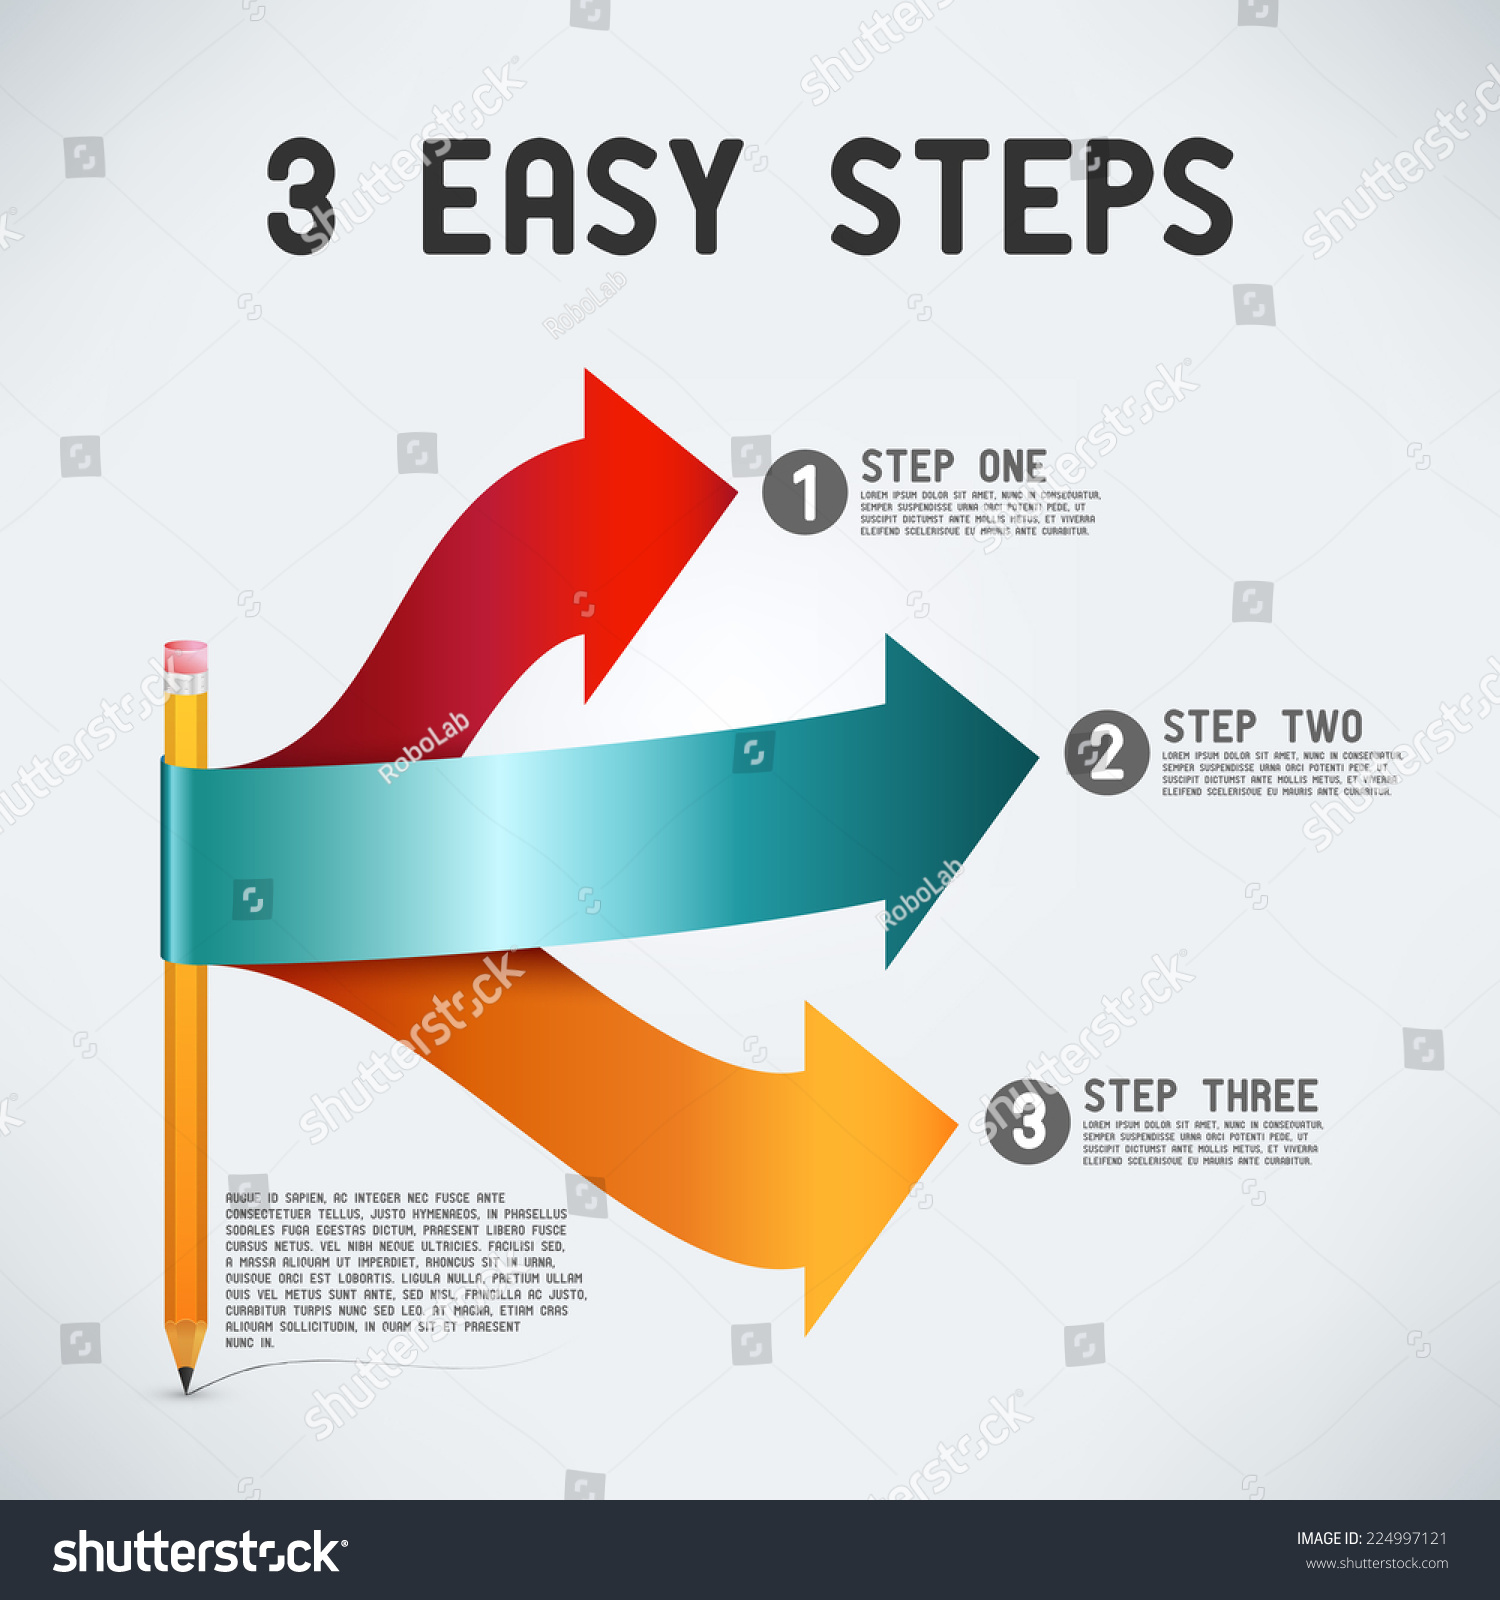 Easy steps 2